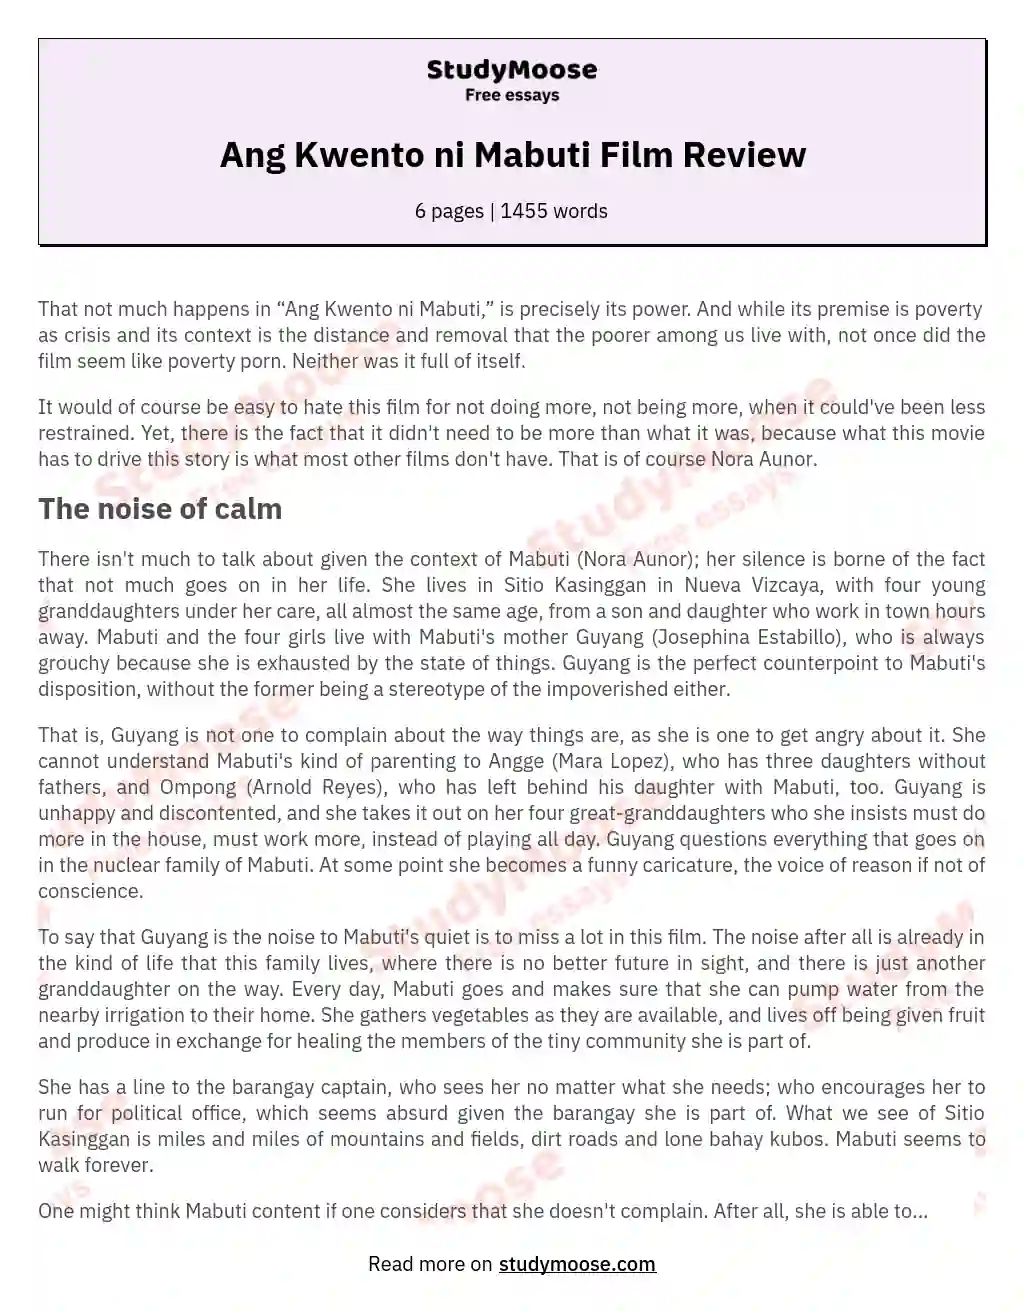 Ang Kwento ni Mabuti Film Review essay